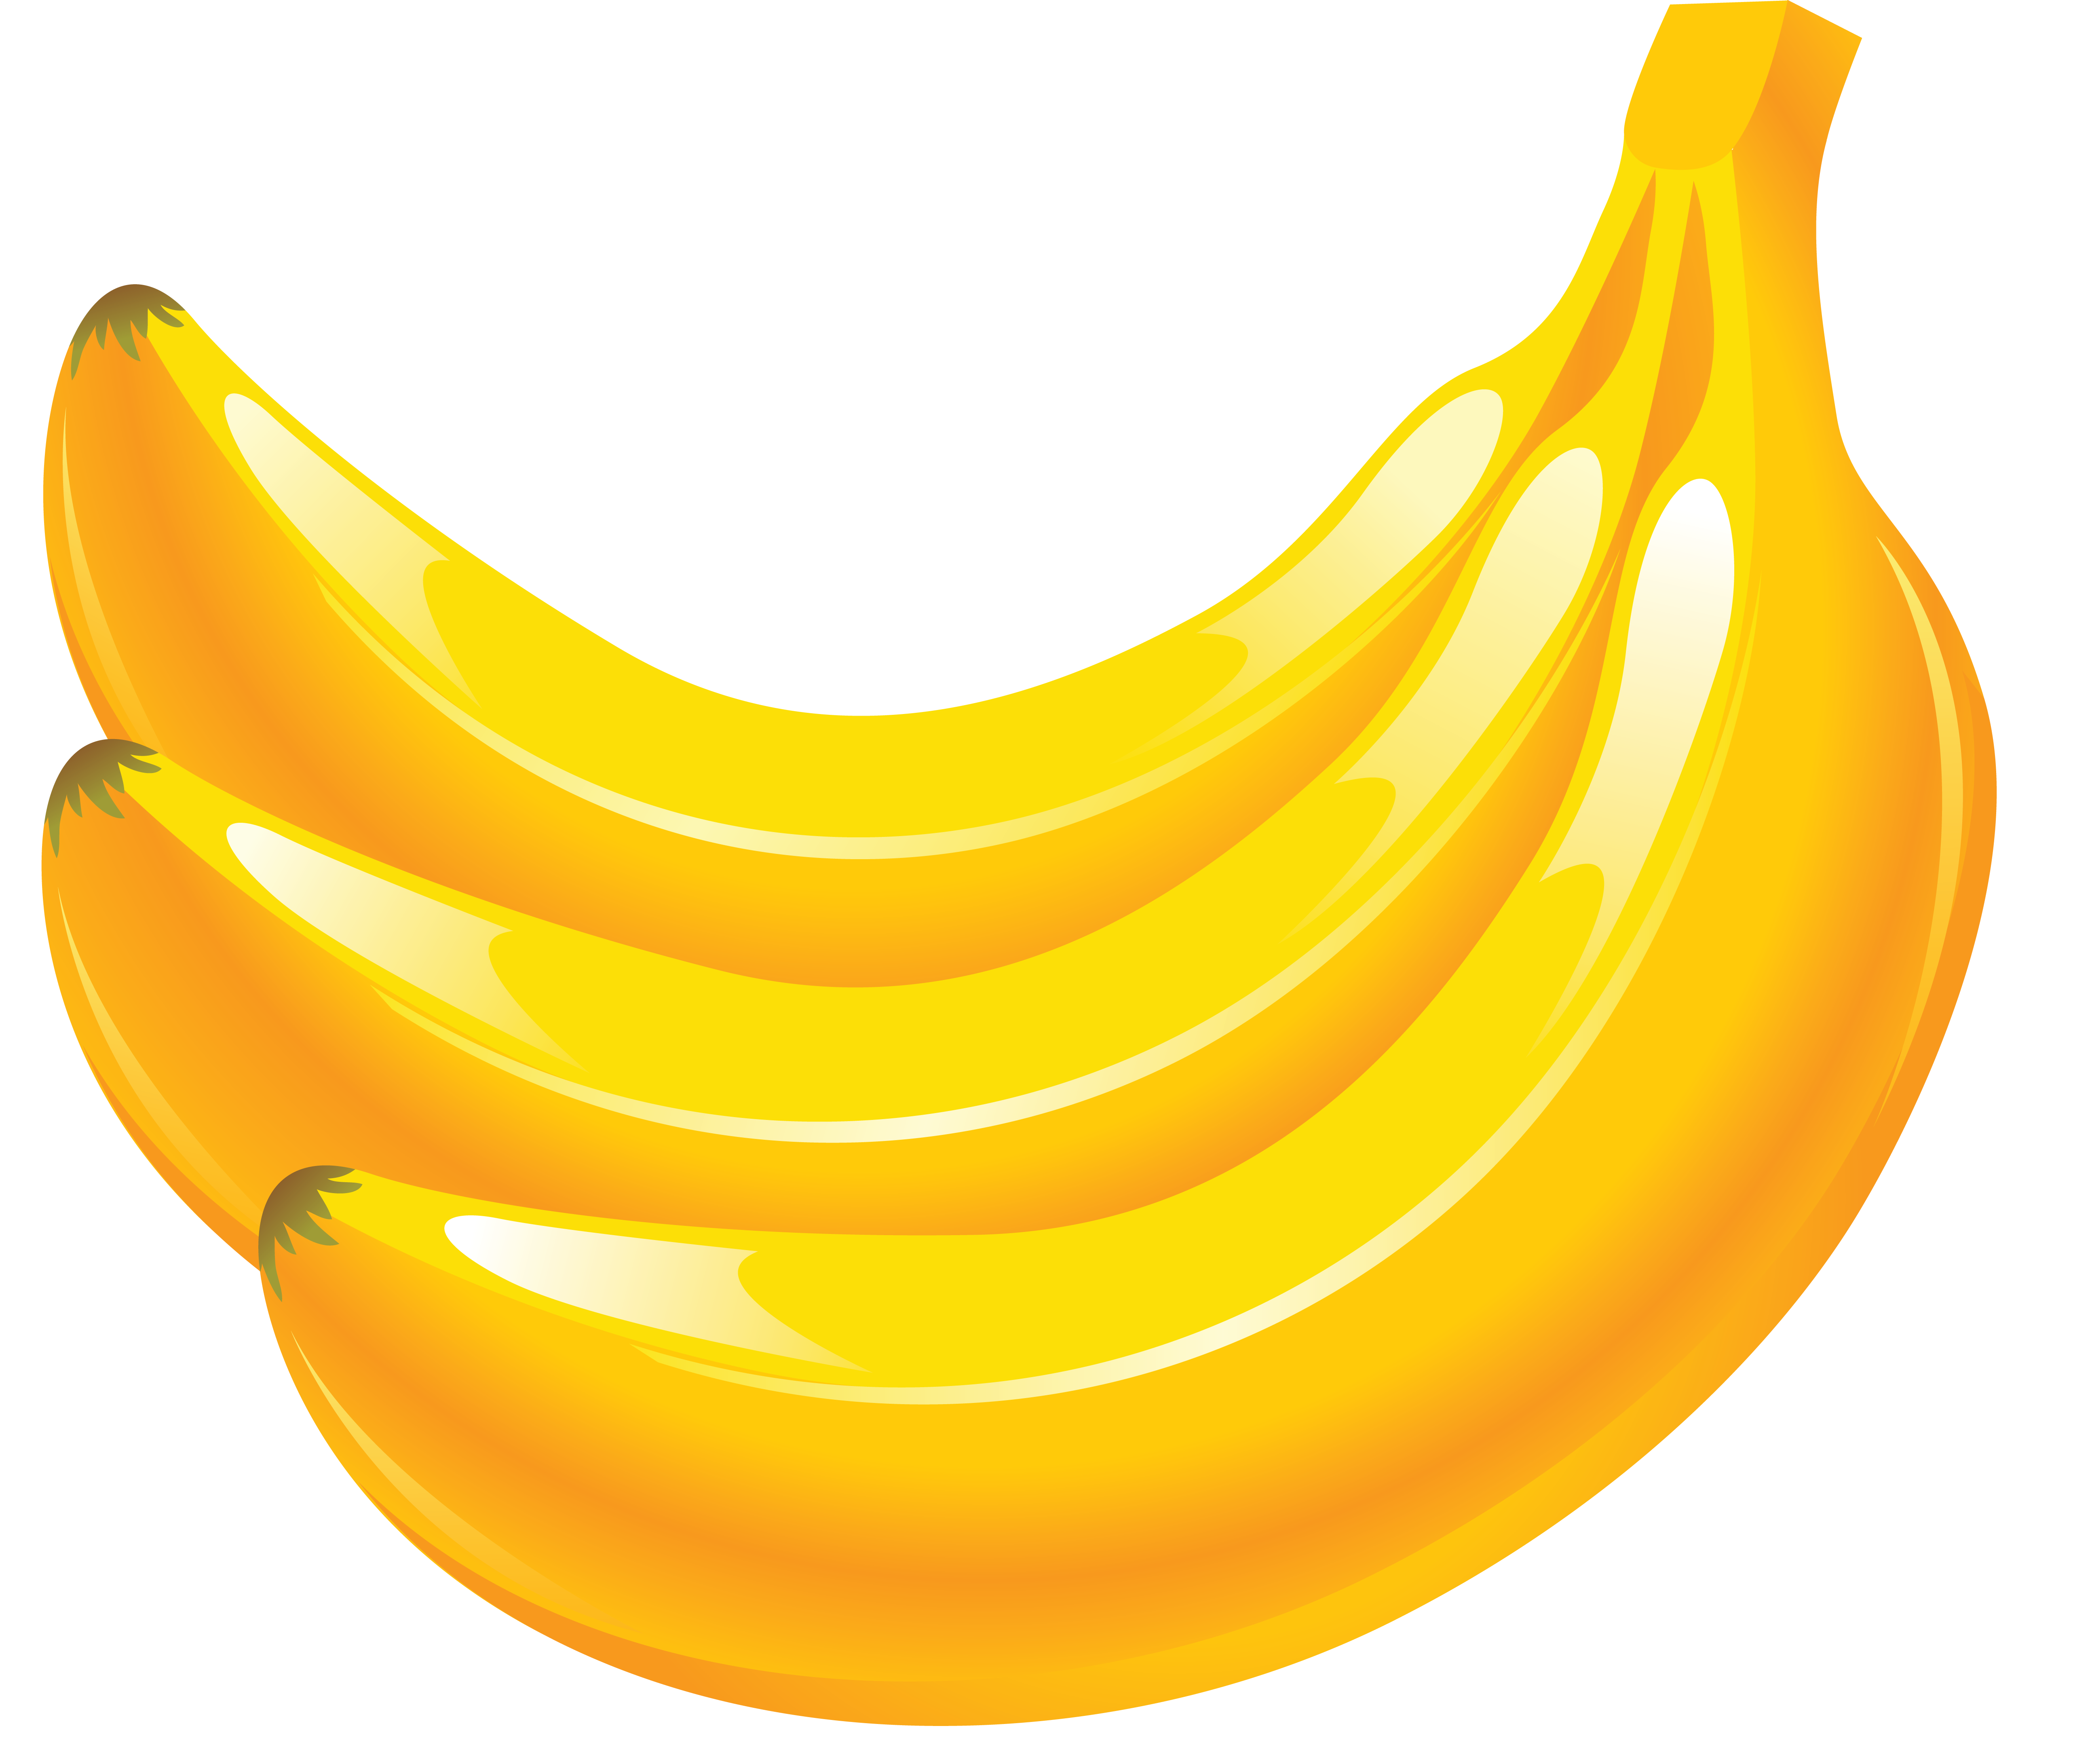 3 banane gialle